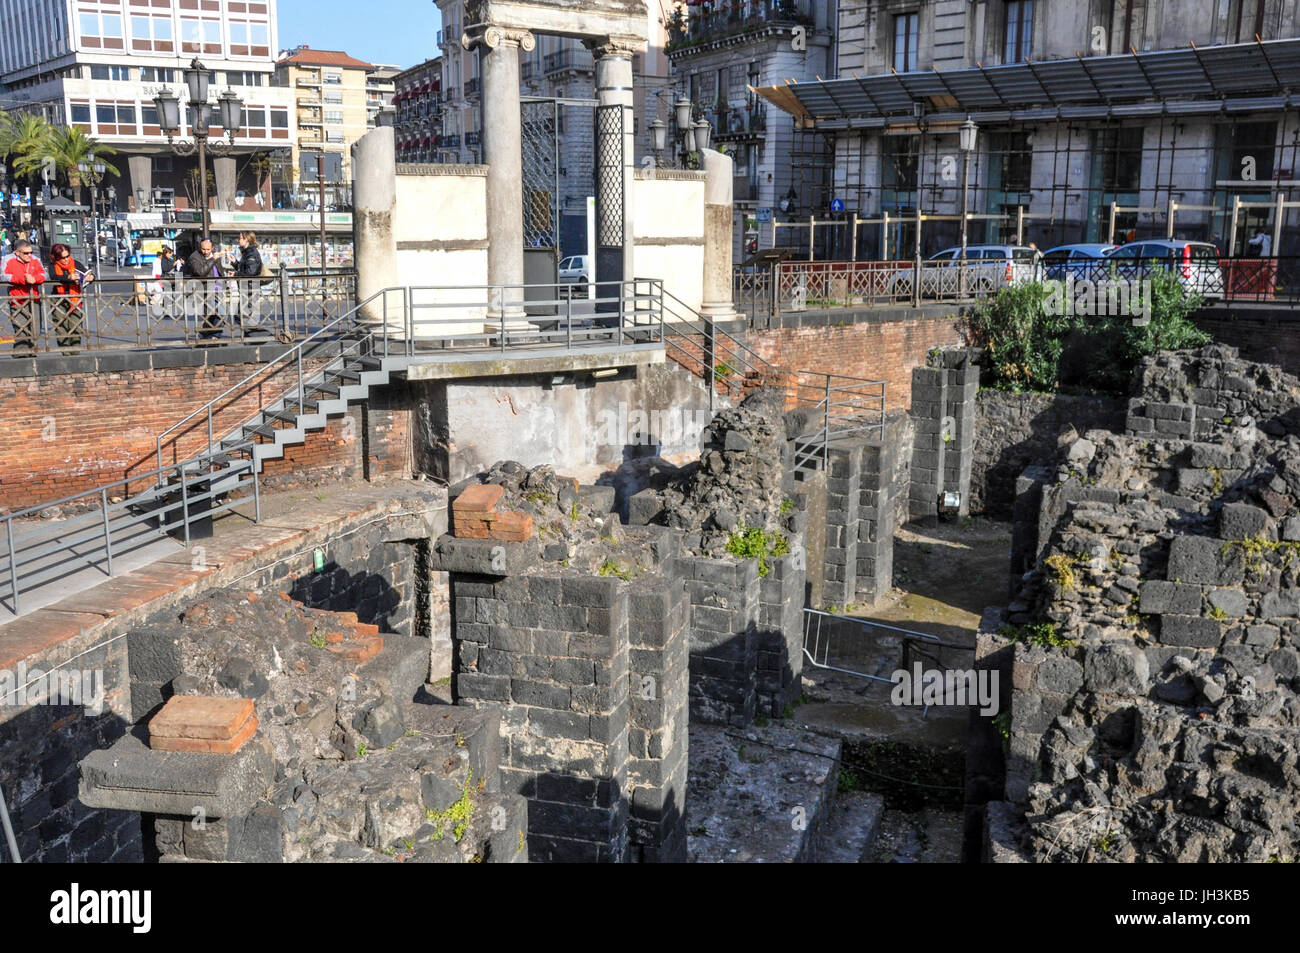 Roman Amphitheatre of Catania located in Piazza Stesicoro, Catania, Sicily, Italy. Stock Photo